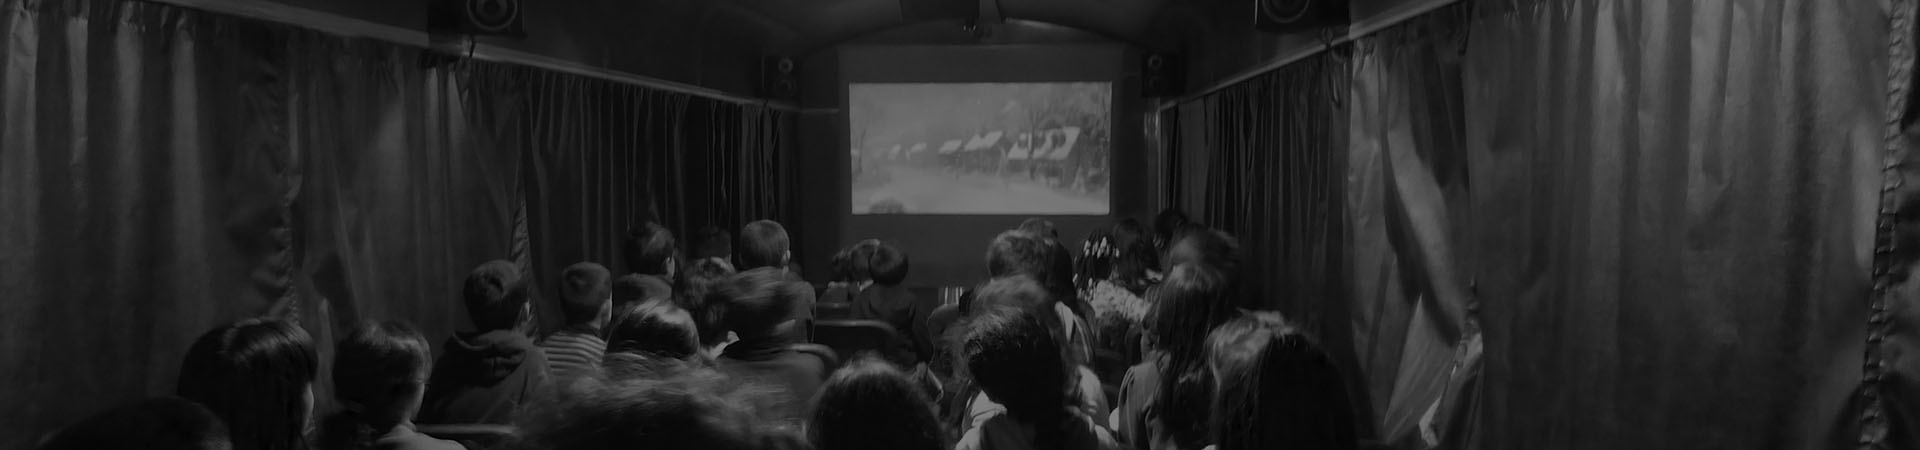 Fotografia de um grupo de crianças a ver um filme na carruagem auditório durante uma festa de aniversário